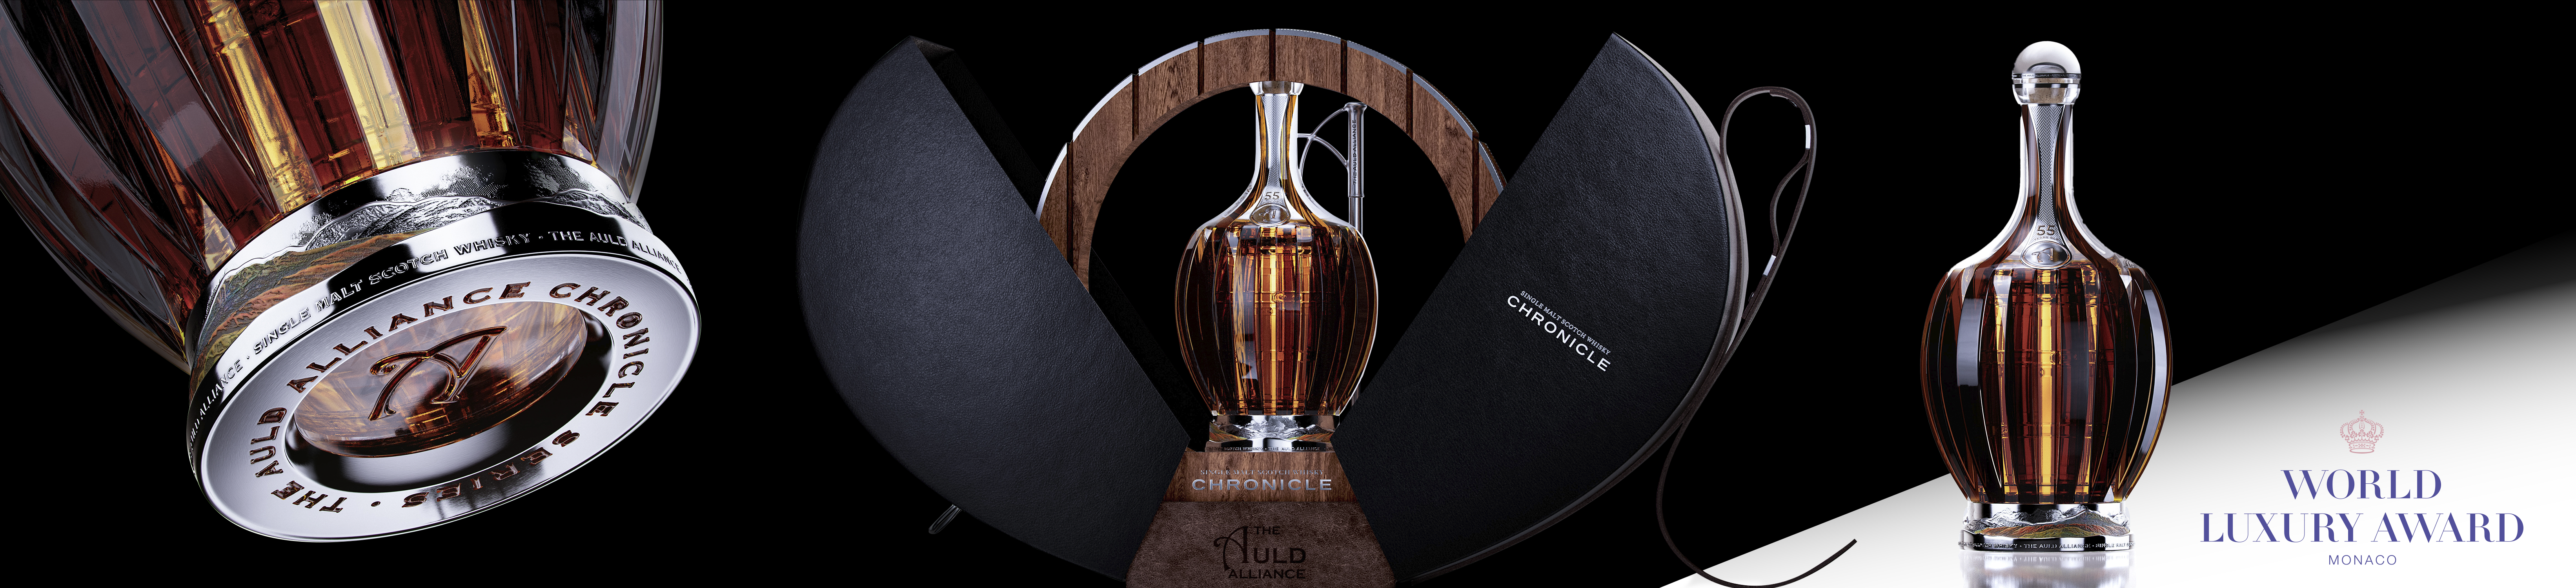 Chronicle Whisky conquistou um World Luxury Award para a Omdesign